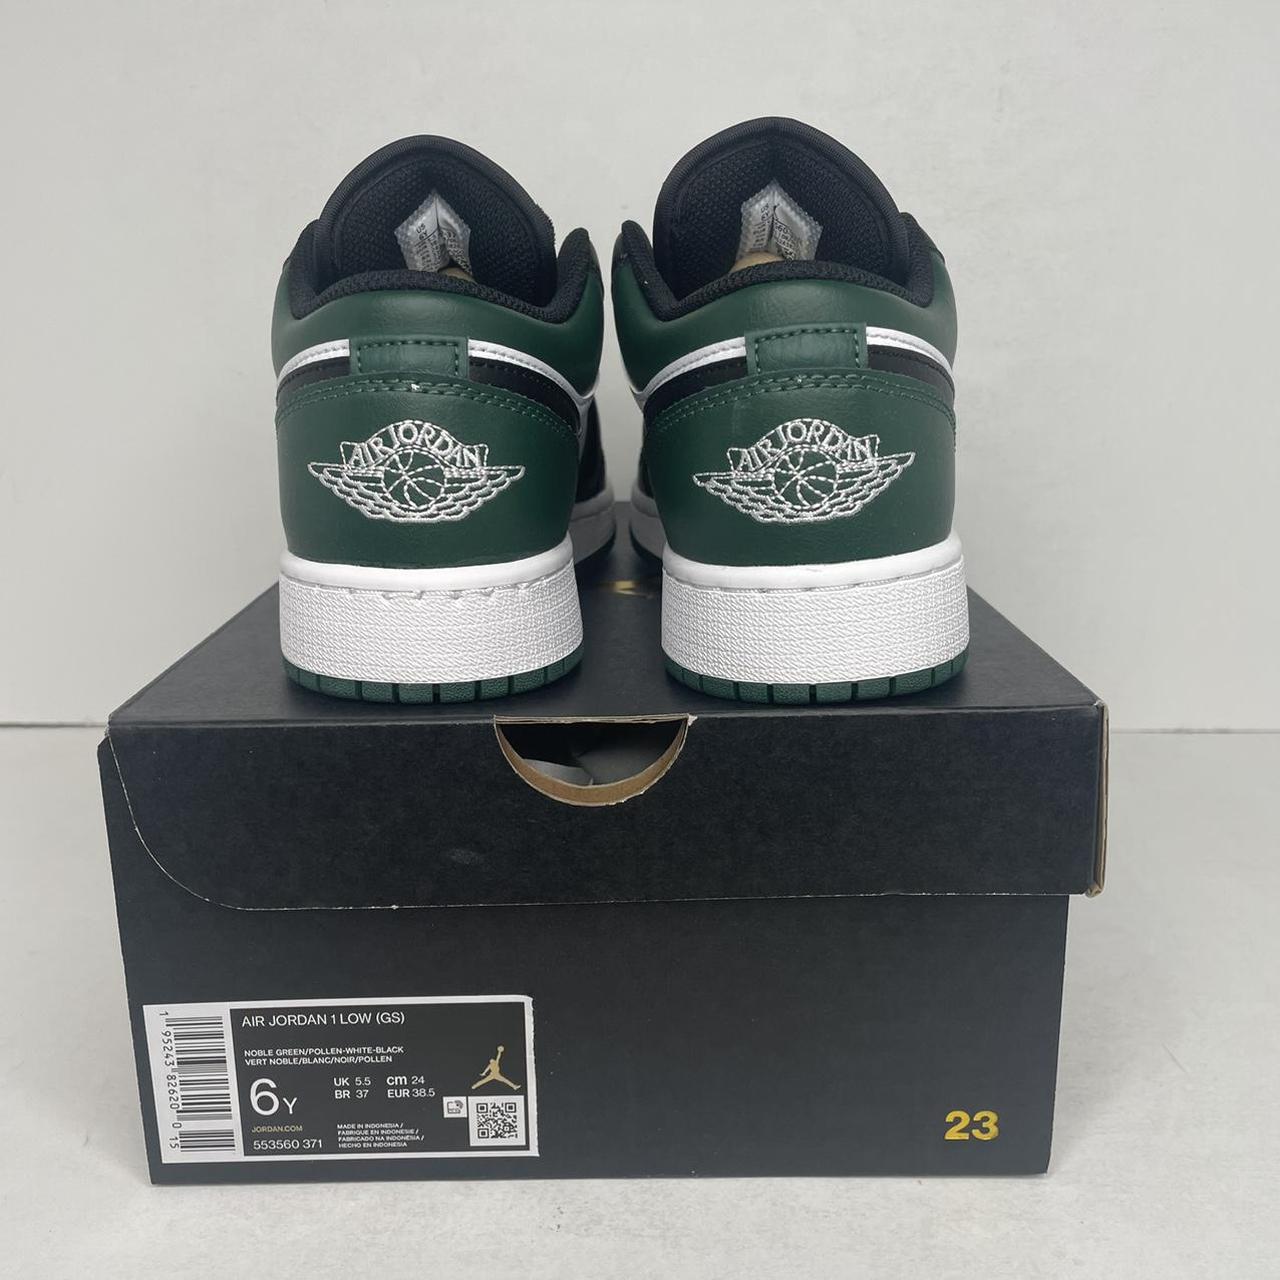 Nike Air Jordan 1 Retro Low GS “Green Toe/Noble... - Depop